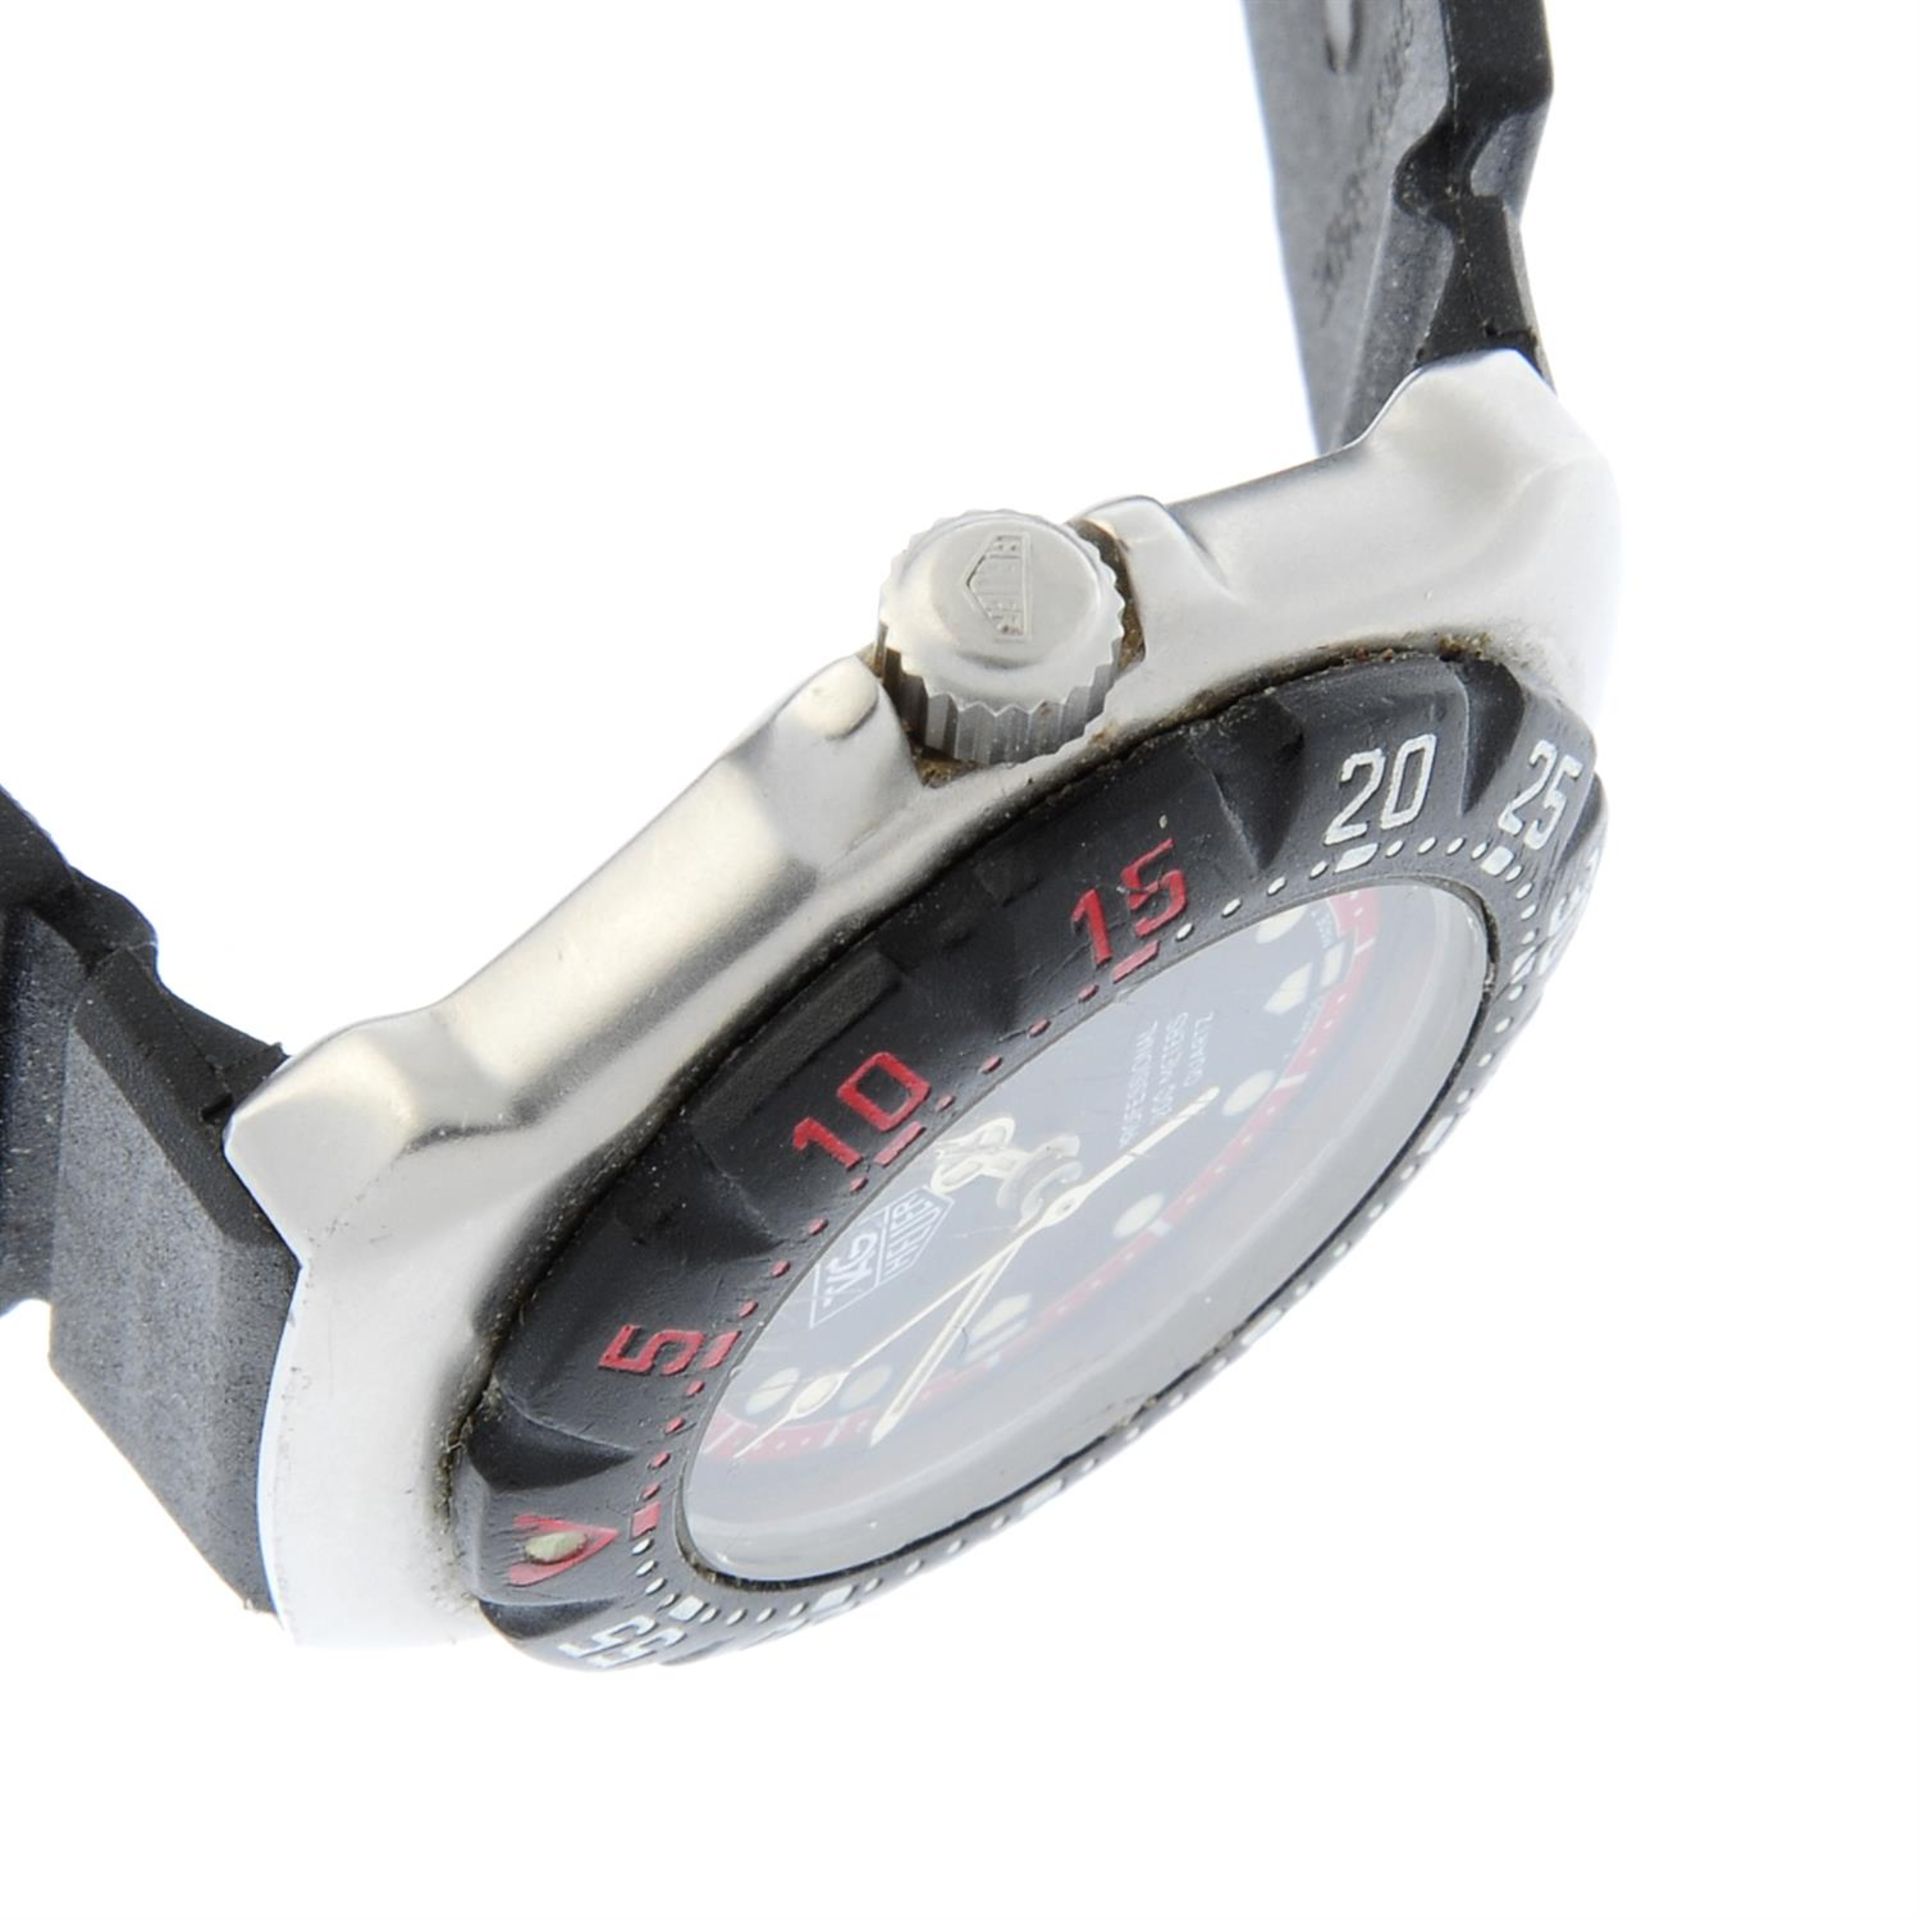 TAG HEUER - a stainless steel Formula 1 wrist watch, 28mm. - Bild 3 aus 4